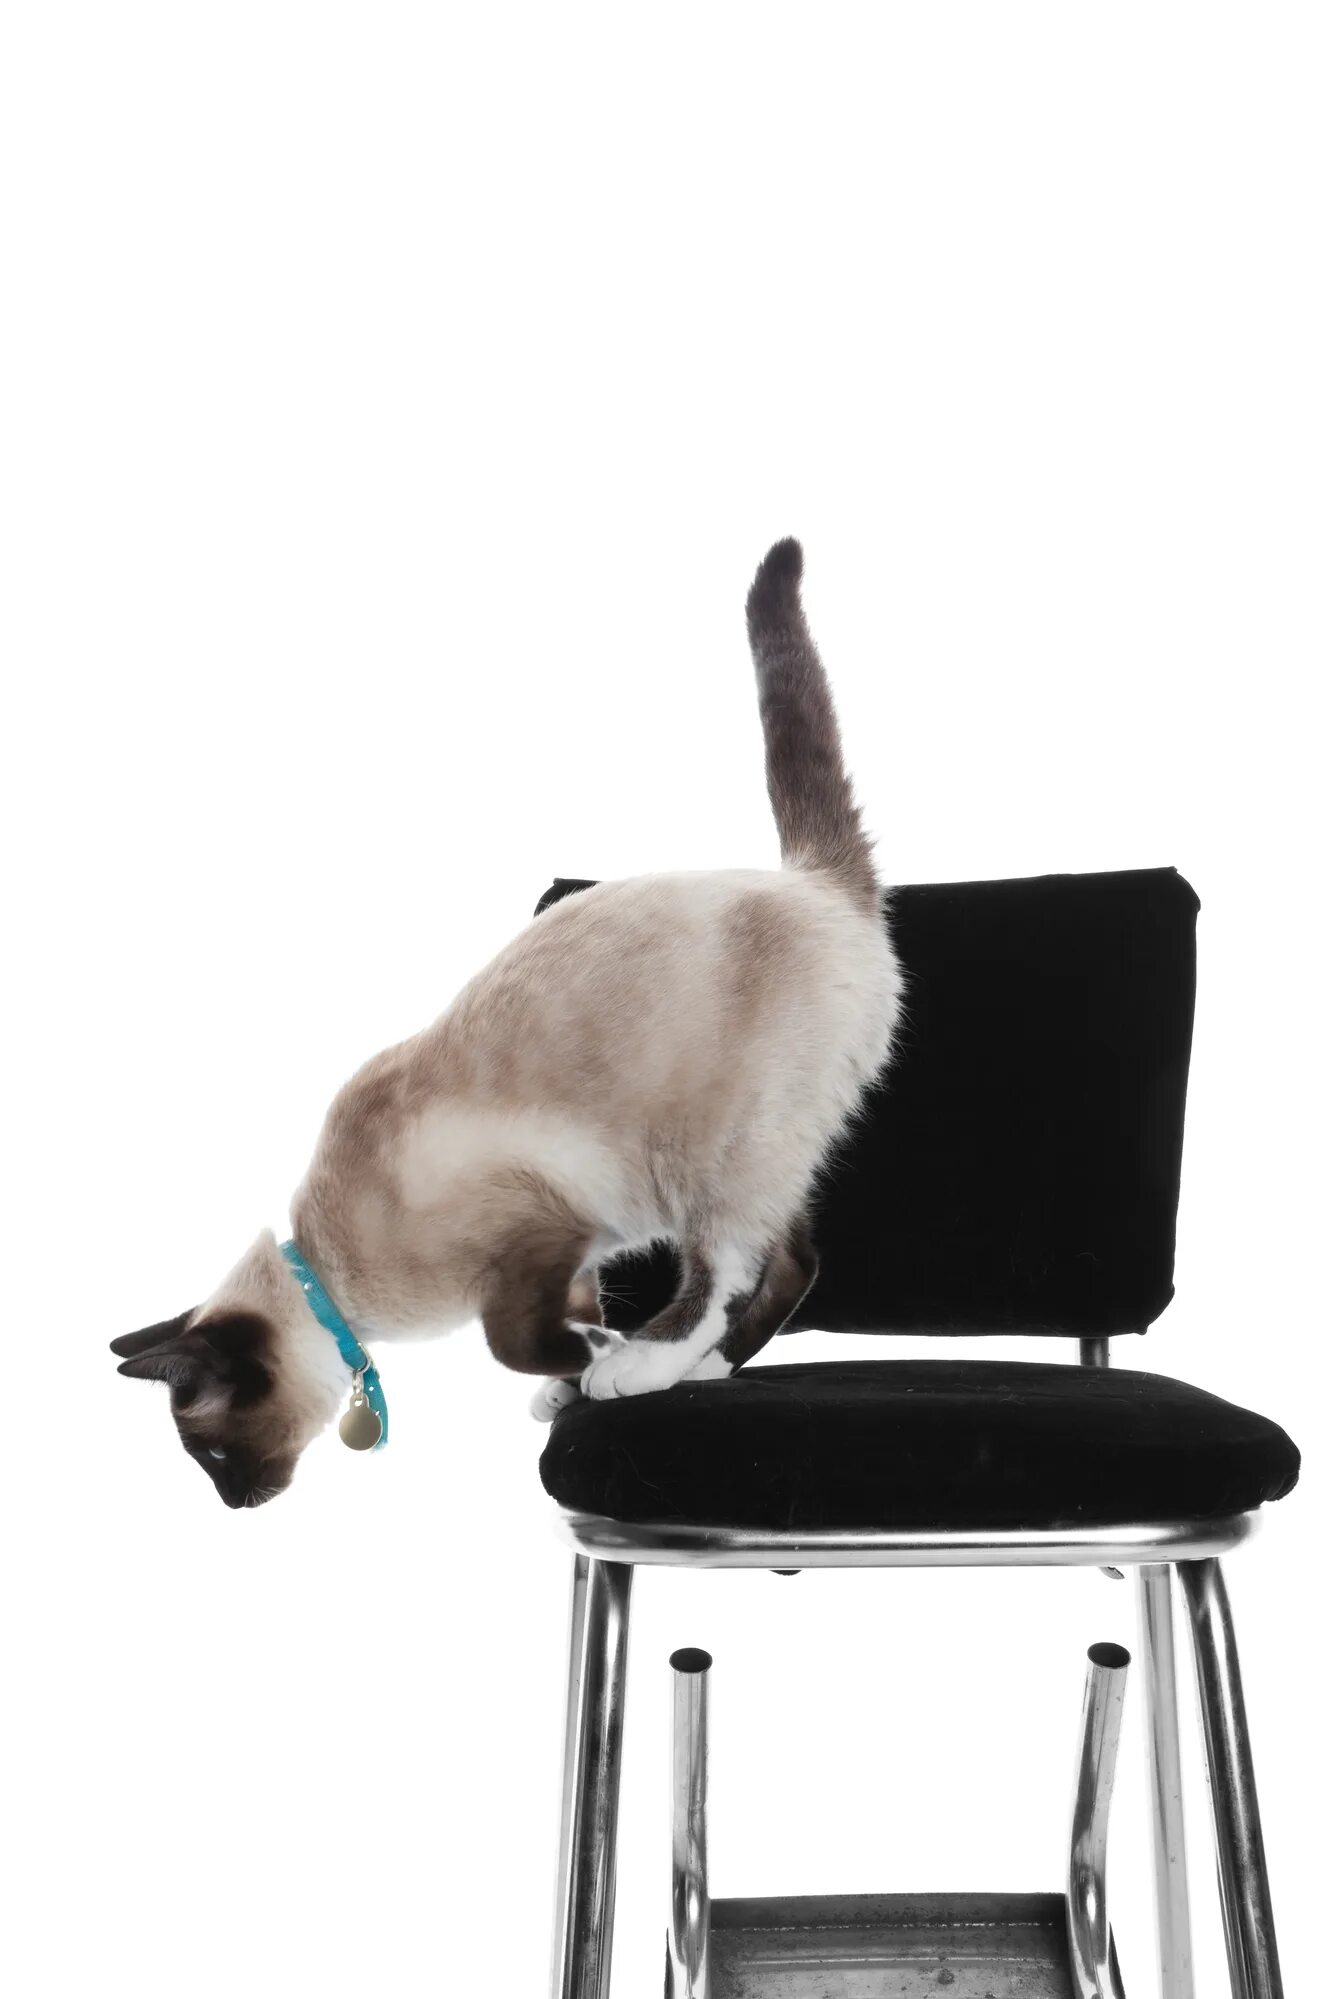 Кошка спрыгивает со стула. Кошка на стуле. Сиамский кот прыгает. Кошка перепрыгивающая со стула на стул. Соскочить со стула